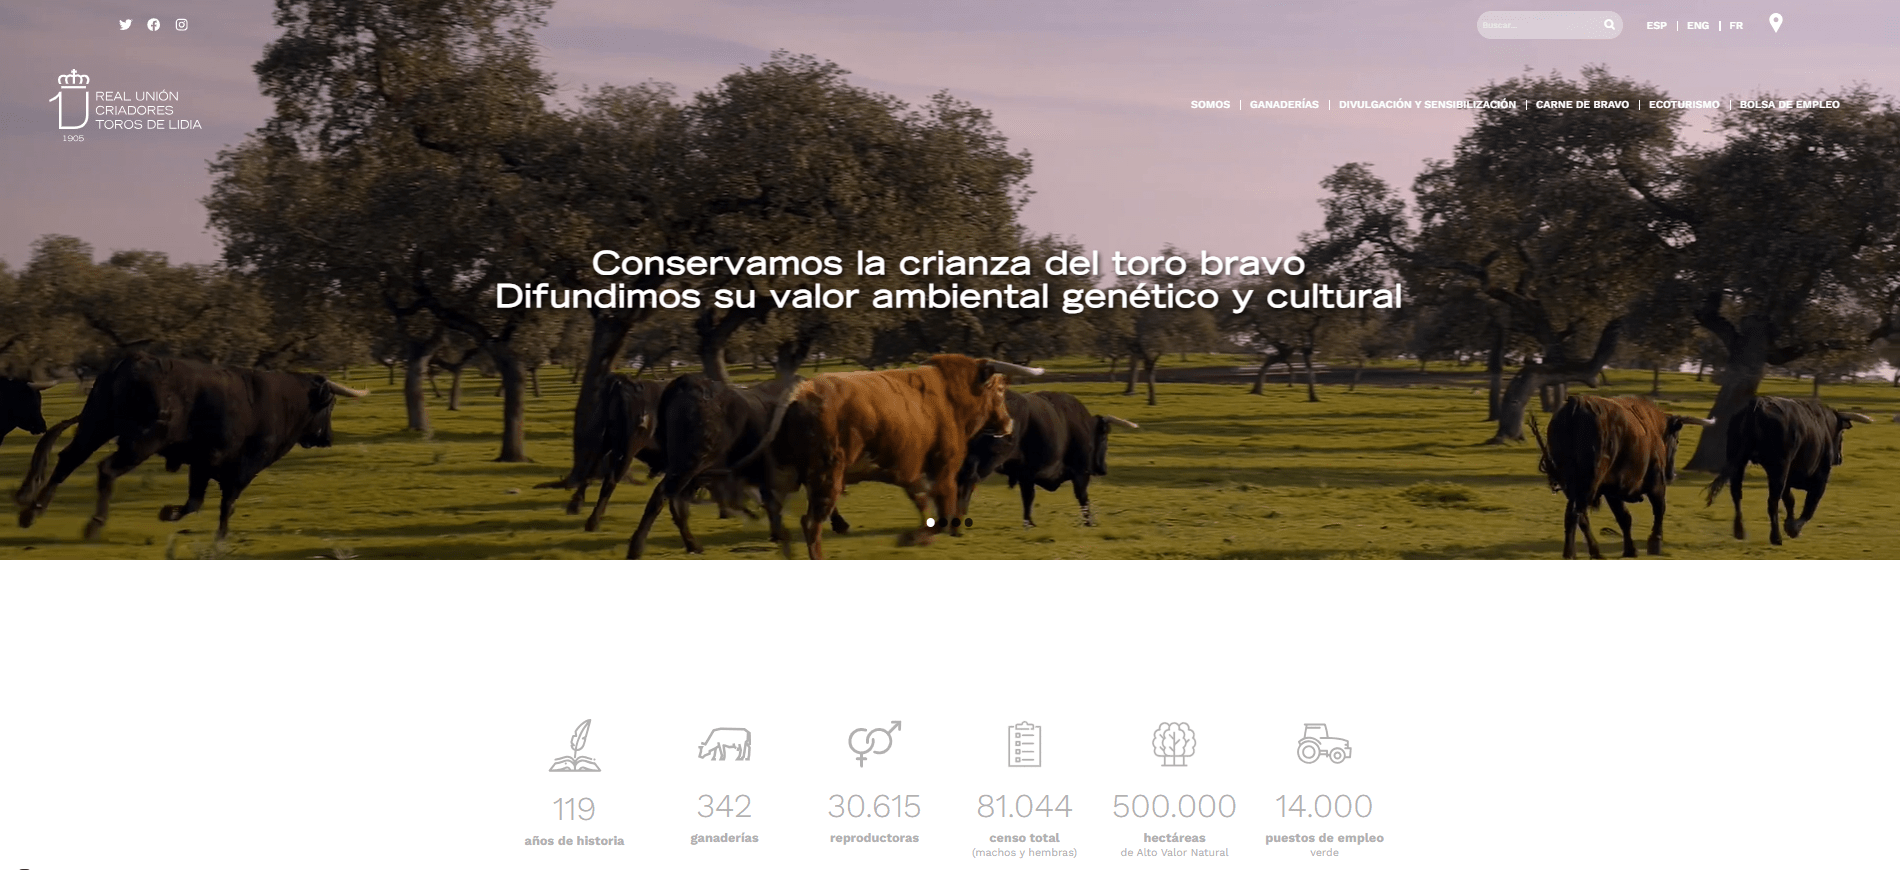 La Real Unión Criadores Toros De Lidia presenta su nueva web